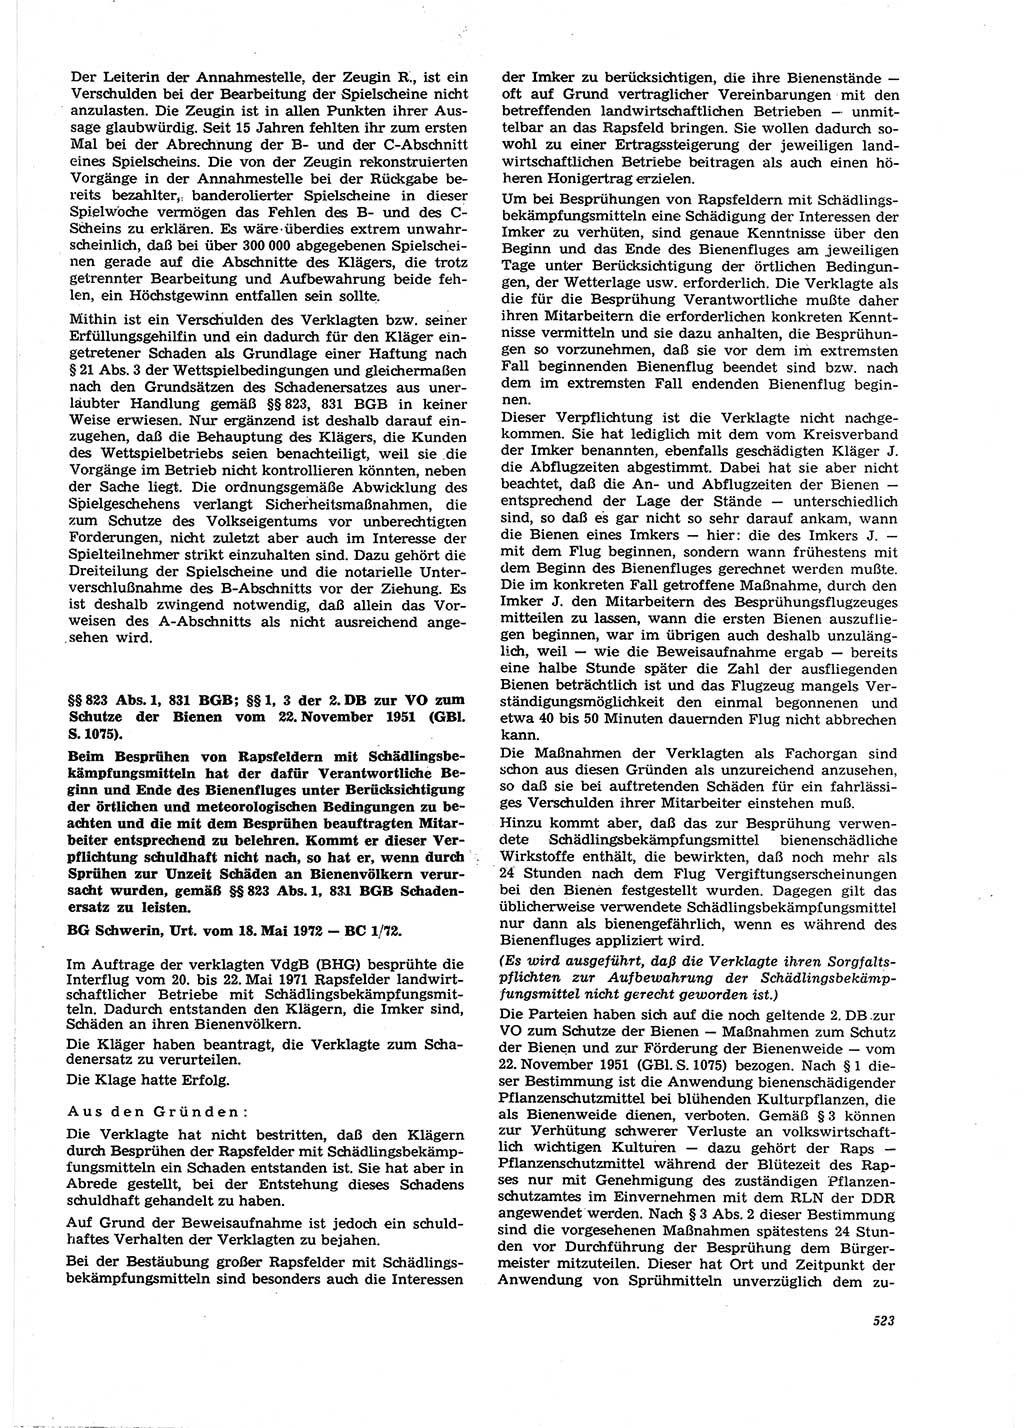 Neue Justiz (NJ), Zeitschrift für Recht und Rechtswissenschaft [Deutsche Demokratische Republik (DDR)], 27. Jahrgang 1973, Seite 523 (NJ DDR 1973, S. 523)